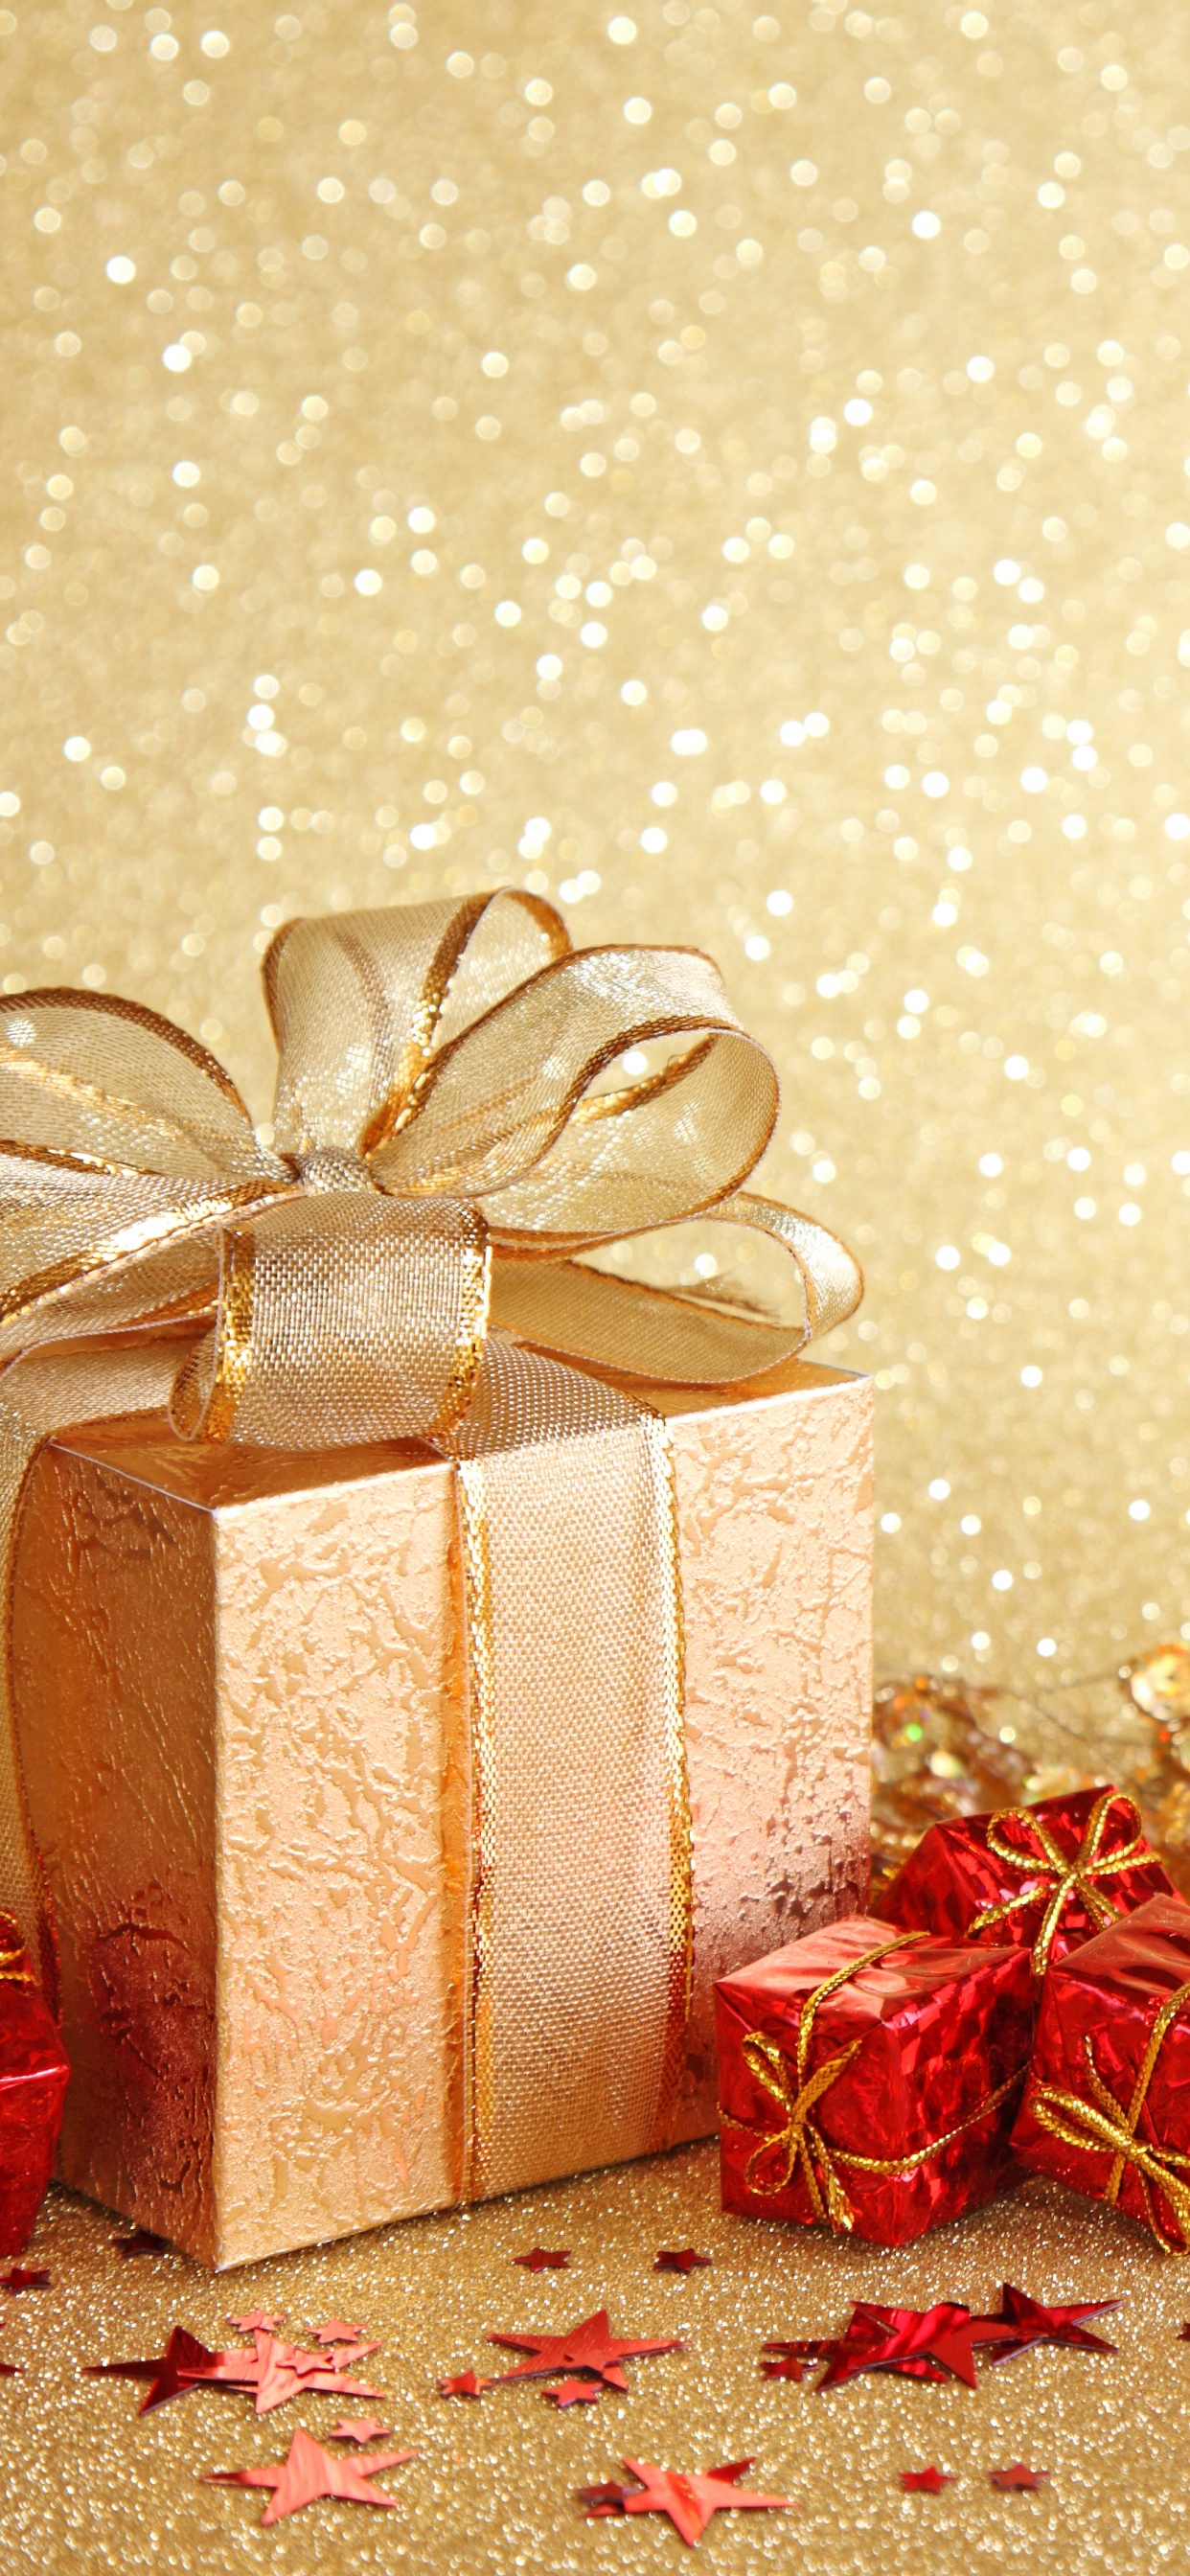 新的一年, 圣诞节那天, 礼品包装, 丝带, 圣诞装饰 壁纸 1242x2688 允许